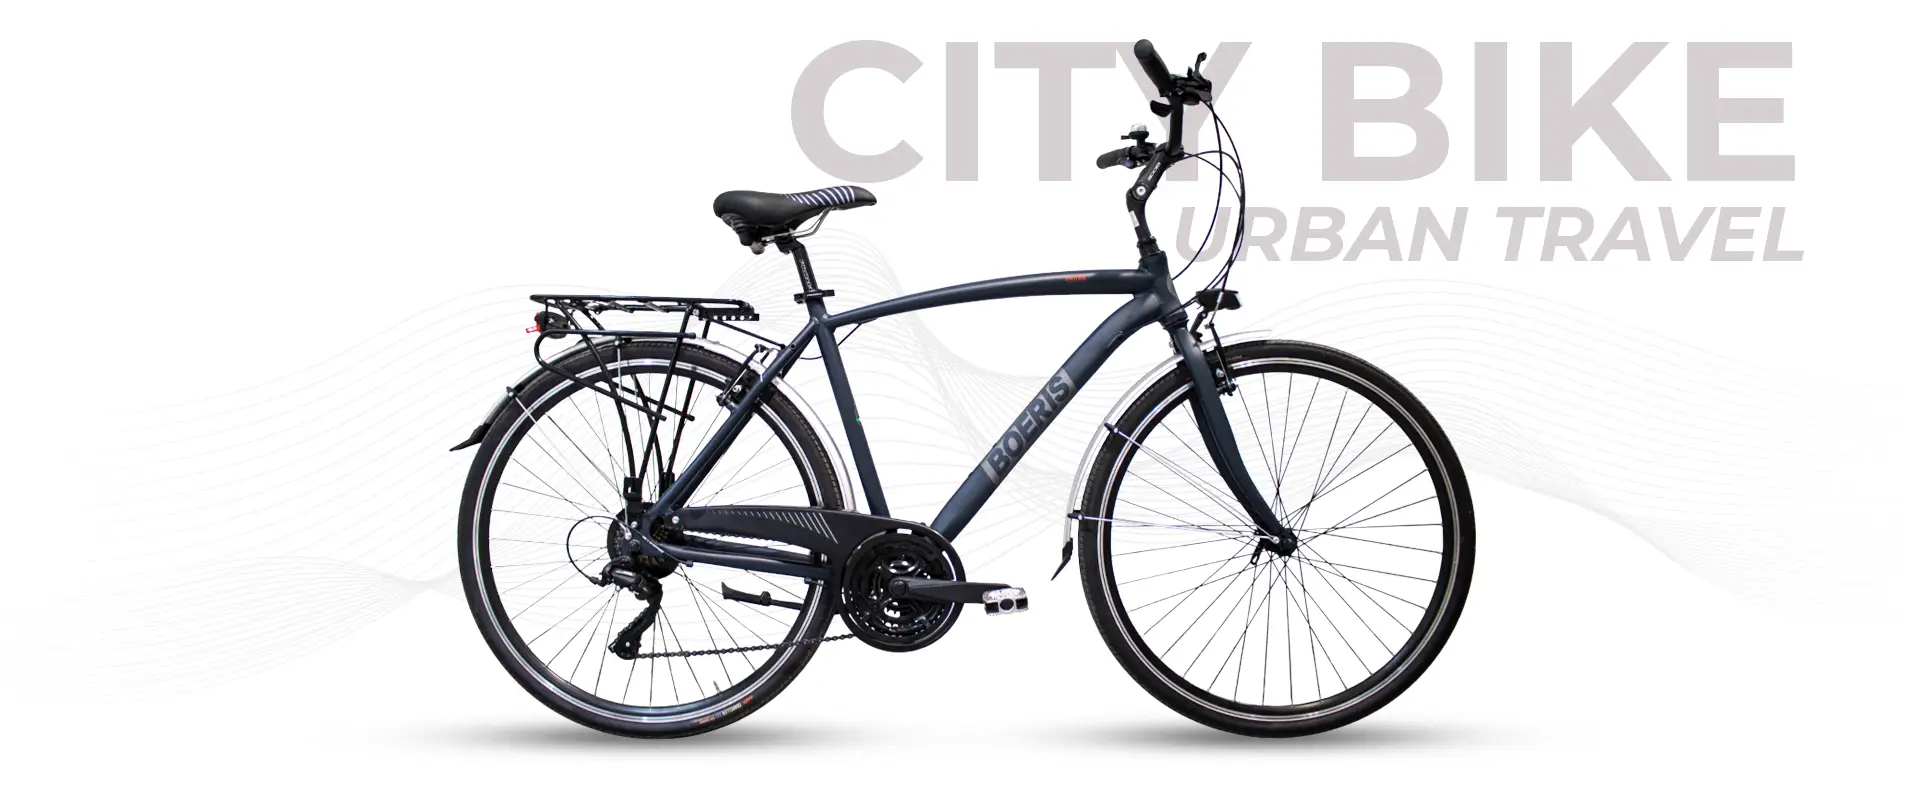 City Bike Urban Travel colore Nero Boeris Bikes Torino con sfondo bianco